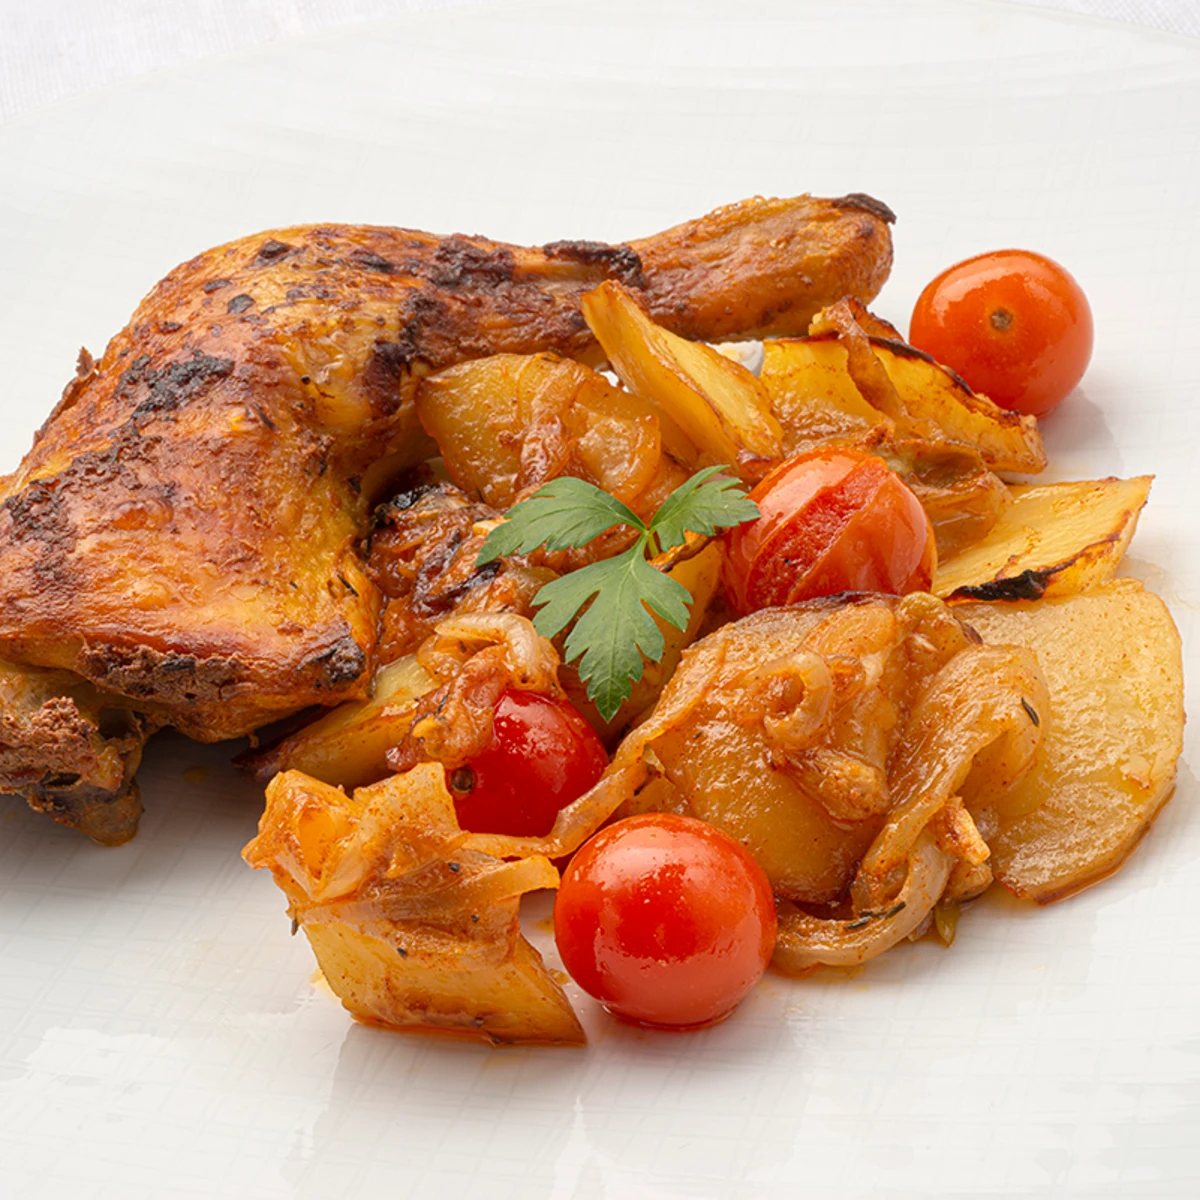 Receta sencilla de pollo al estilo turco con y cebolla, de Karlos Arguiñano